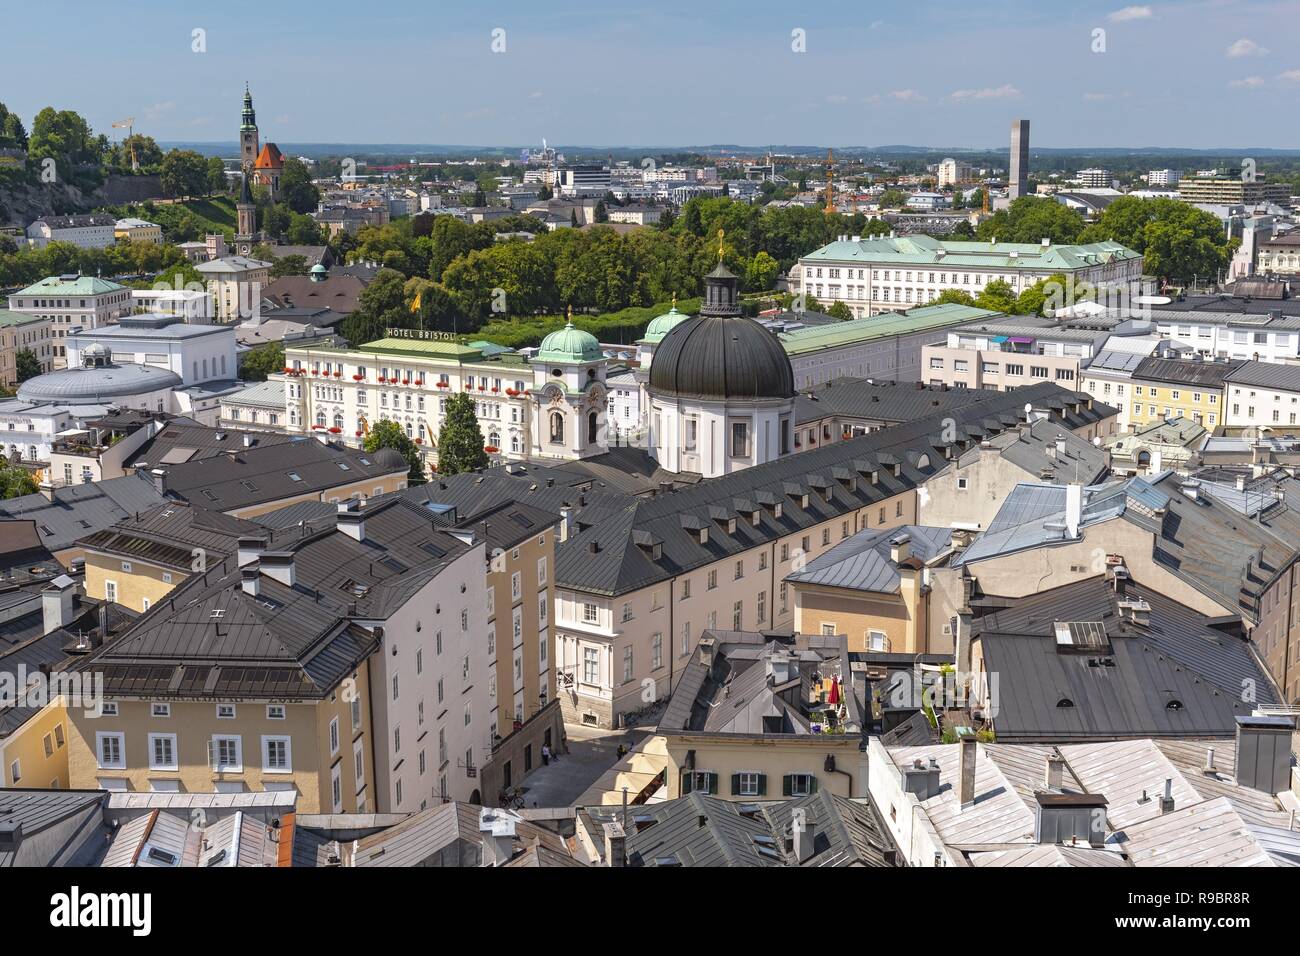 Blick auf die Neustadt mit Kuppel der Dreifaltigkeitskirche Dreifaltigkeitskirche und Priesterhausgasse Straße vom Kapuzinerberg, Salzburg Österreich. Stockfoto